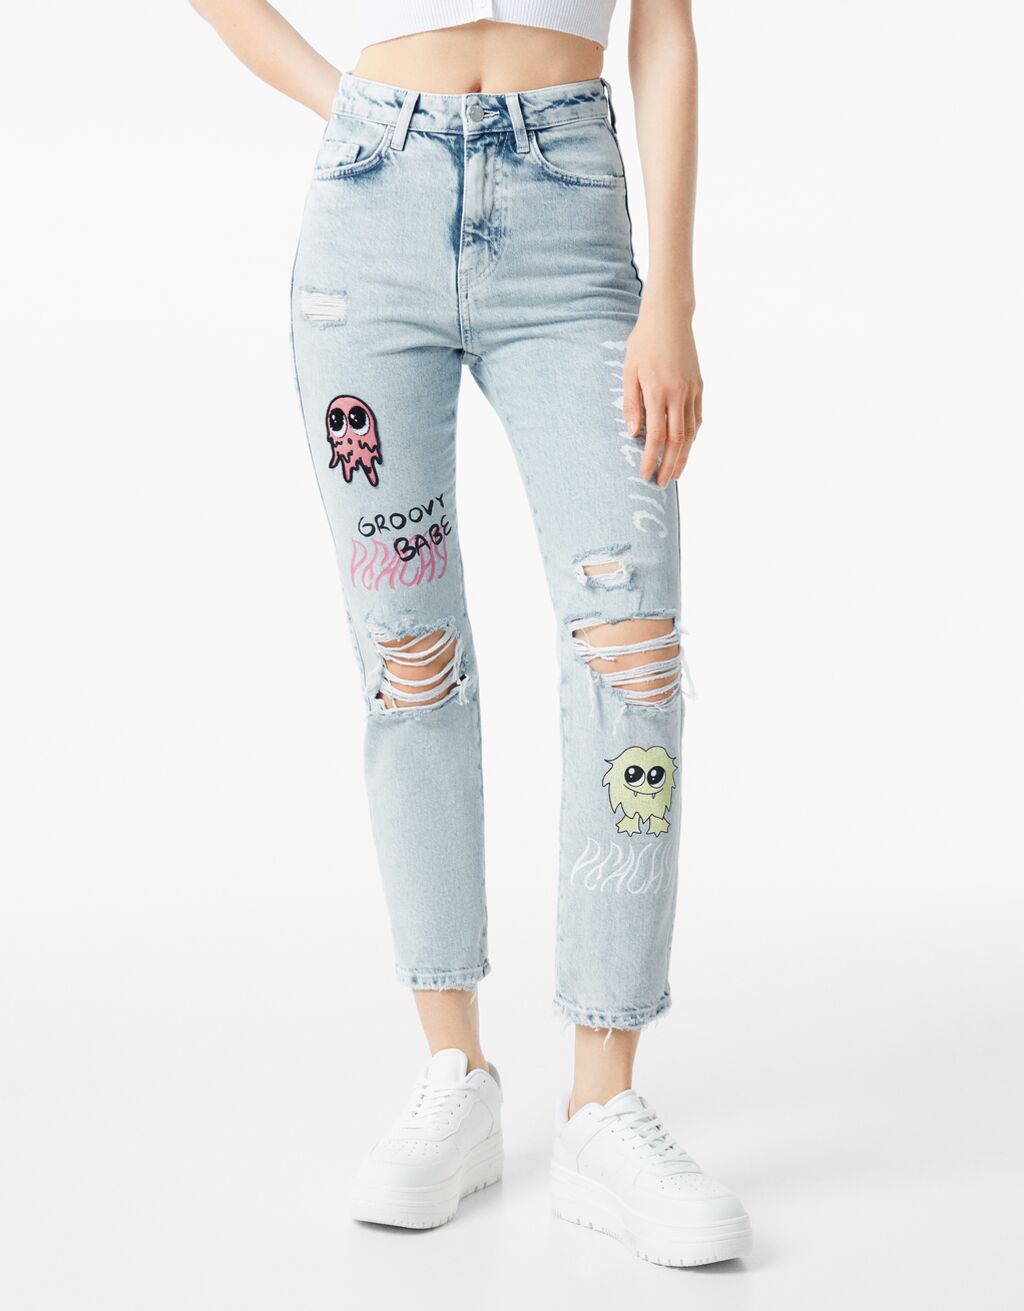 Recht model jeans met patches en print